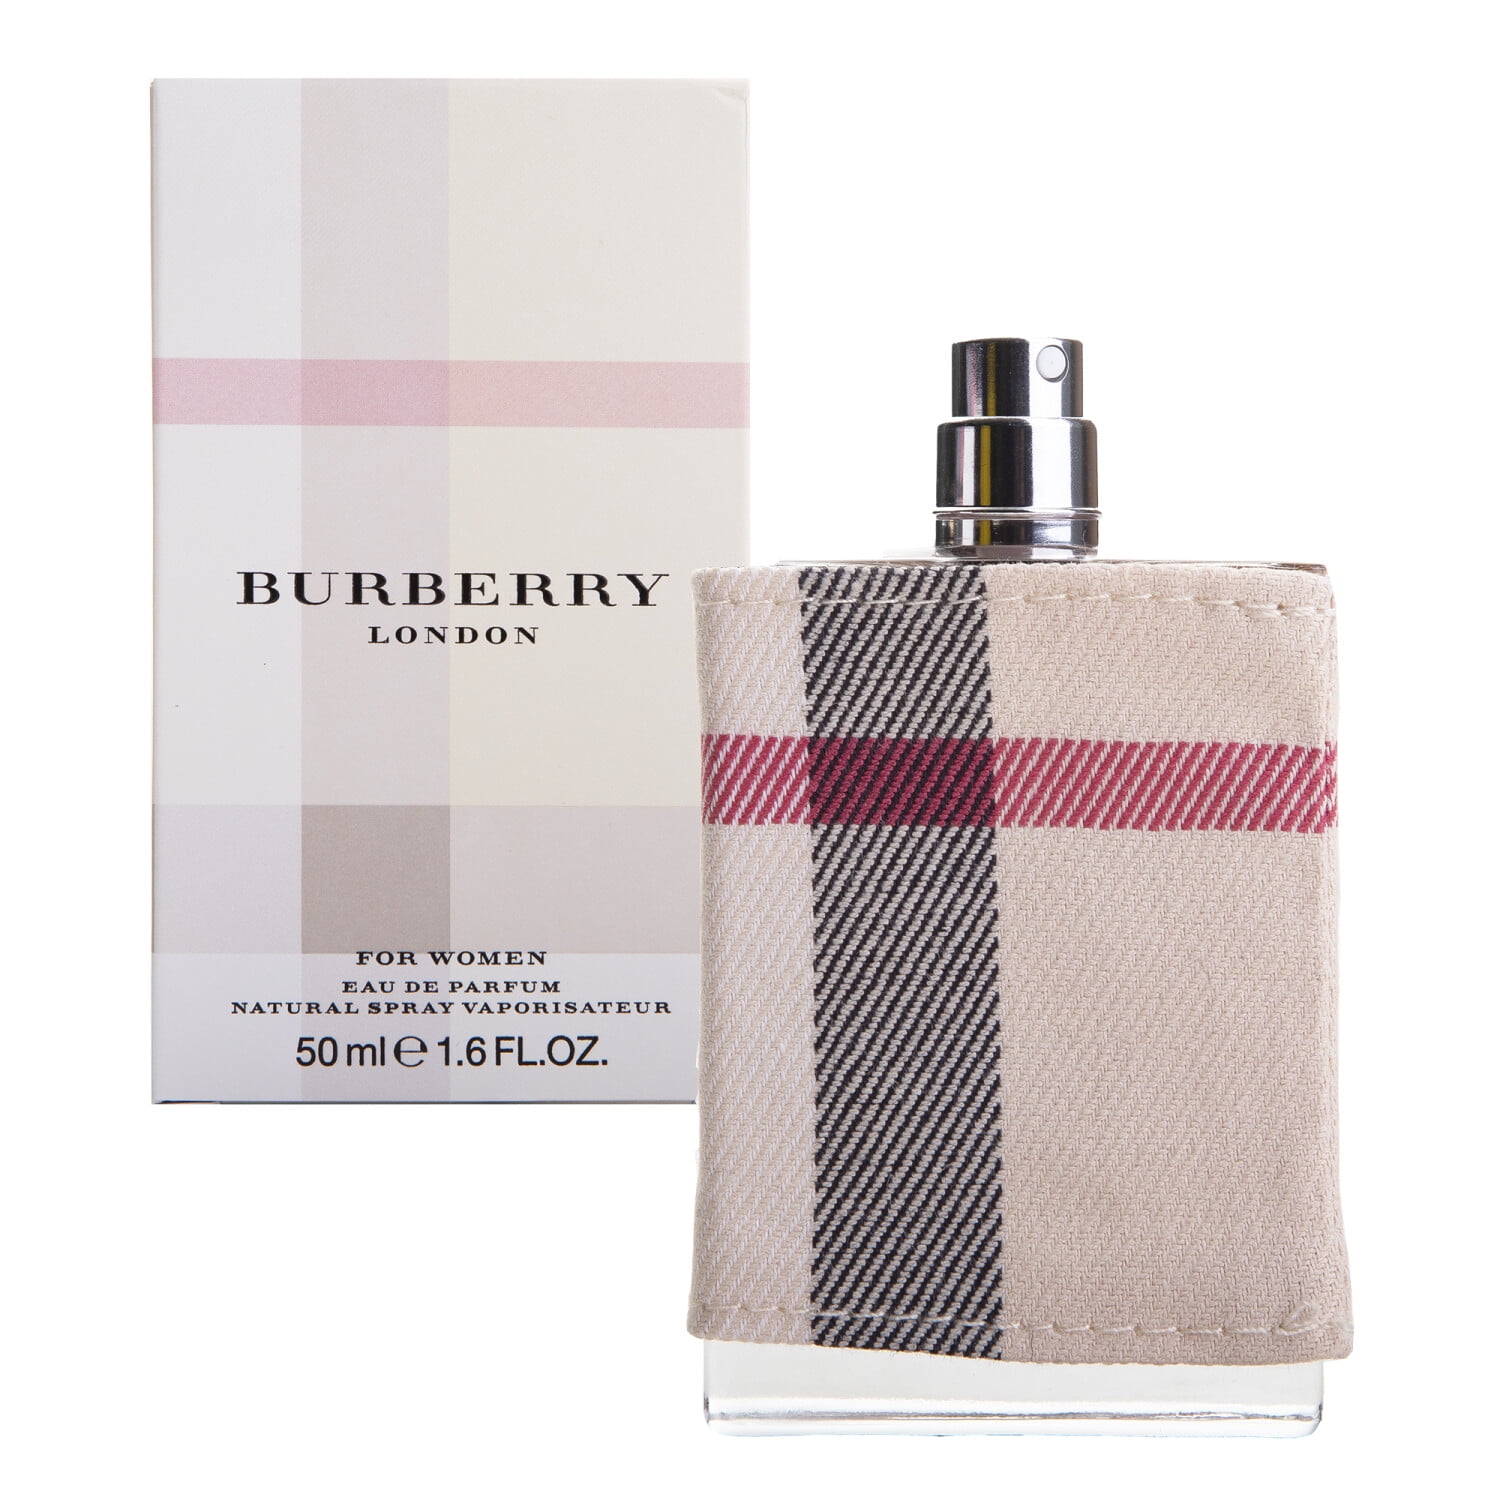 Burberry Burberry London Eau de Parfum Spray for Women 1.6 oz